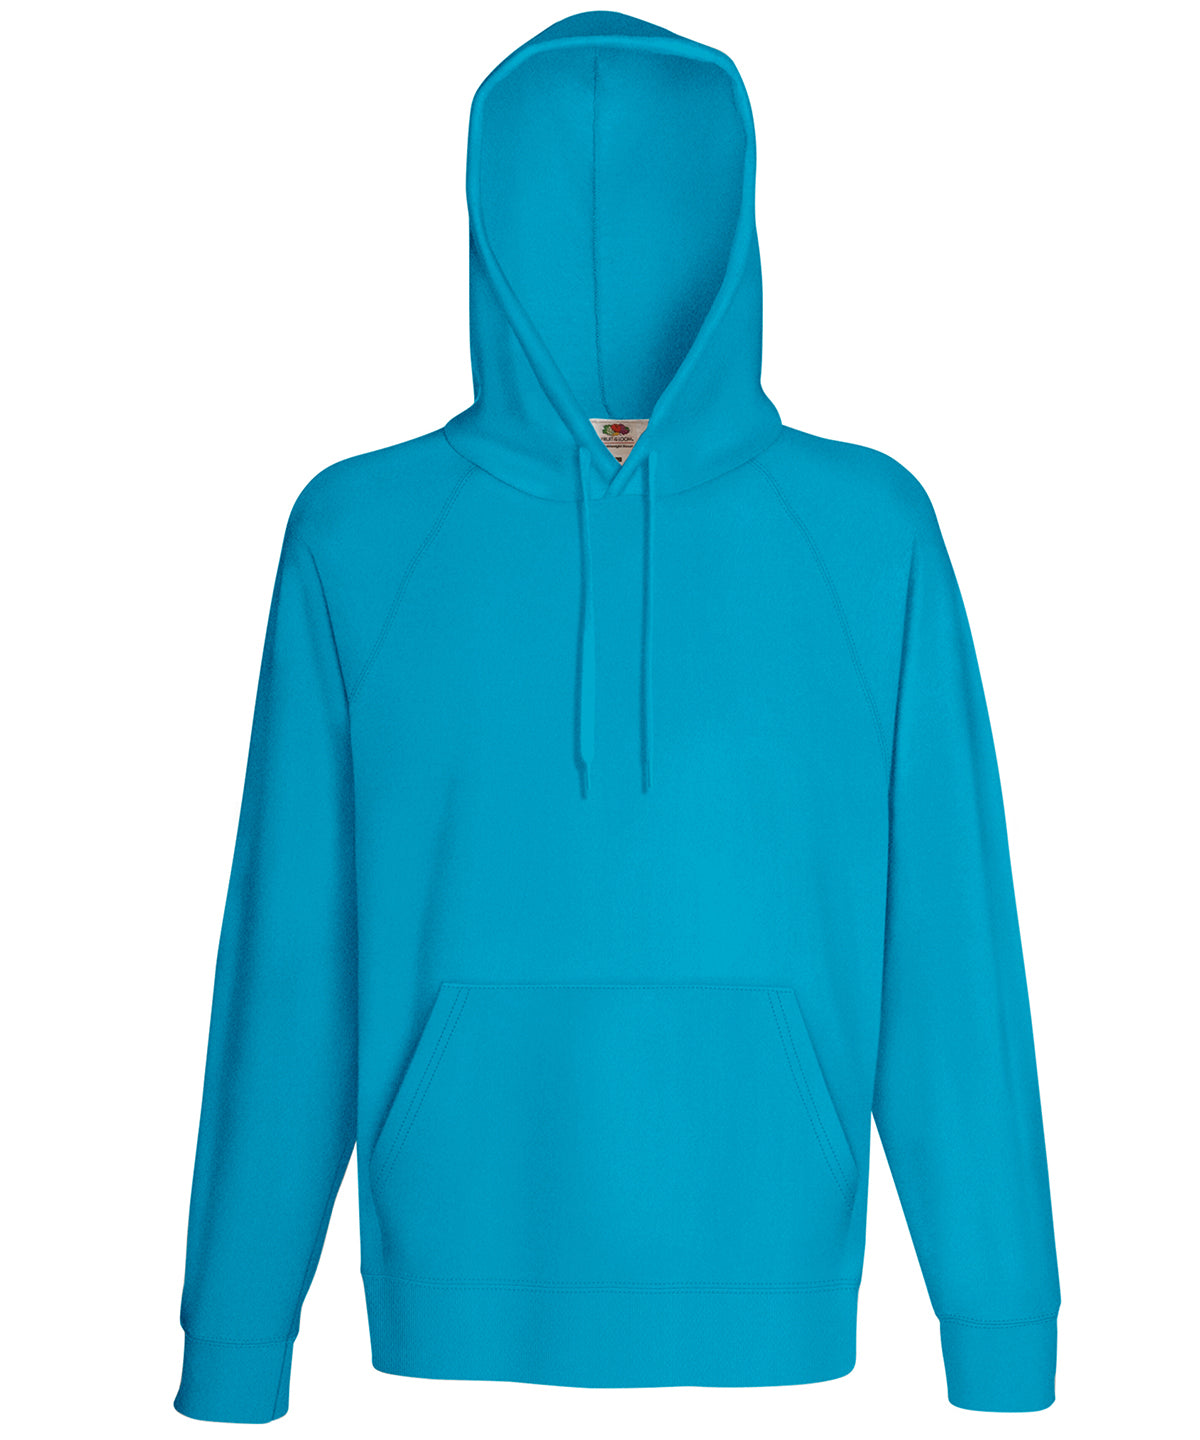 Personalised Hoodies - Mid Blue Fruit of the Loom Lightweight hooded sweatshirt